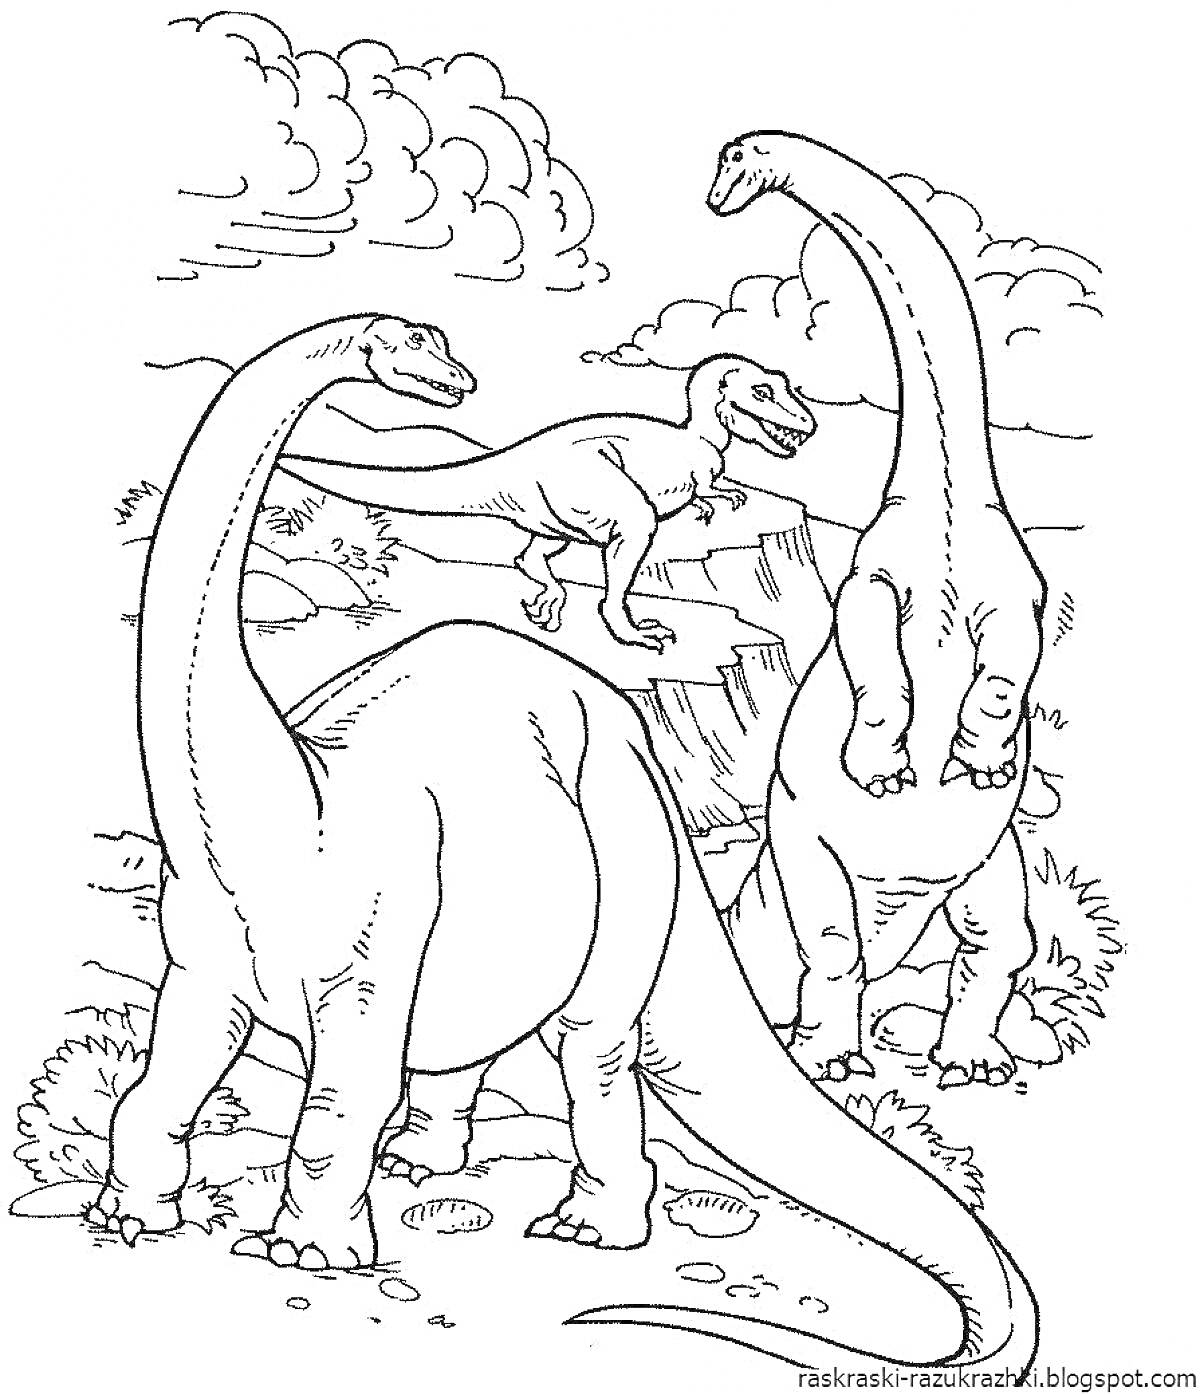 Раскраска Динозавры на фоне облаков и скал